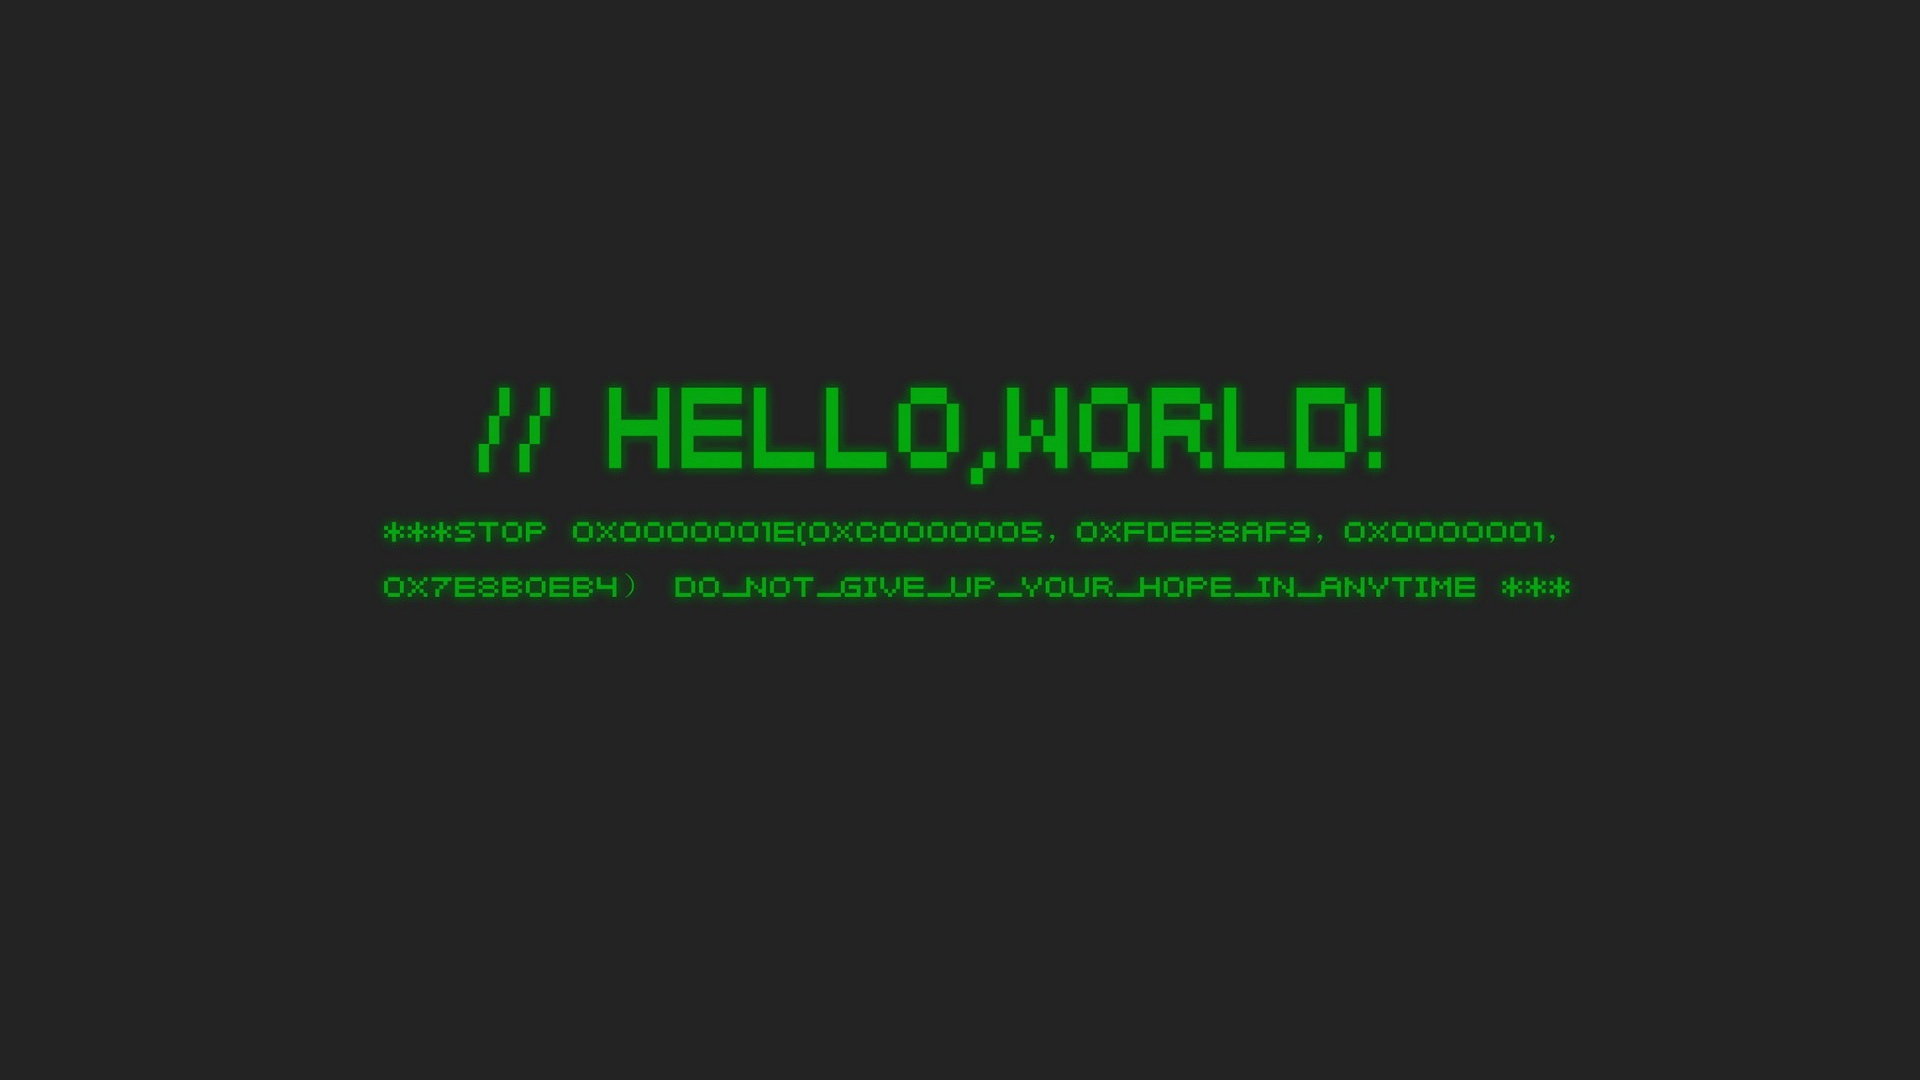 Background Ubuntu Hello World program